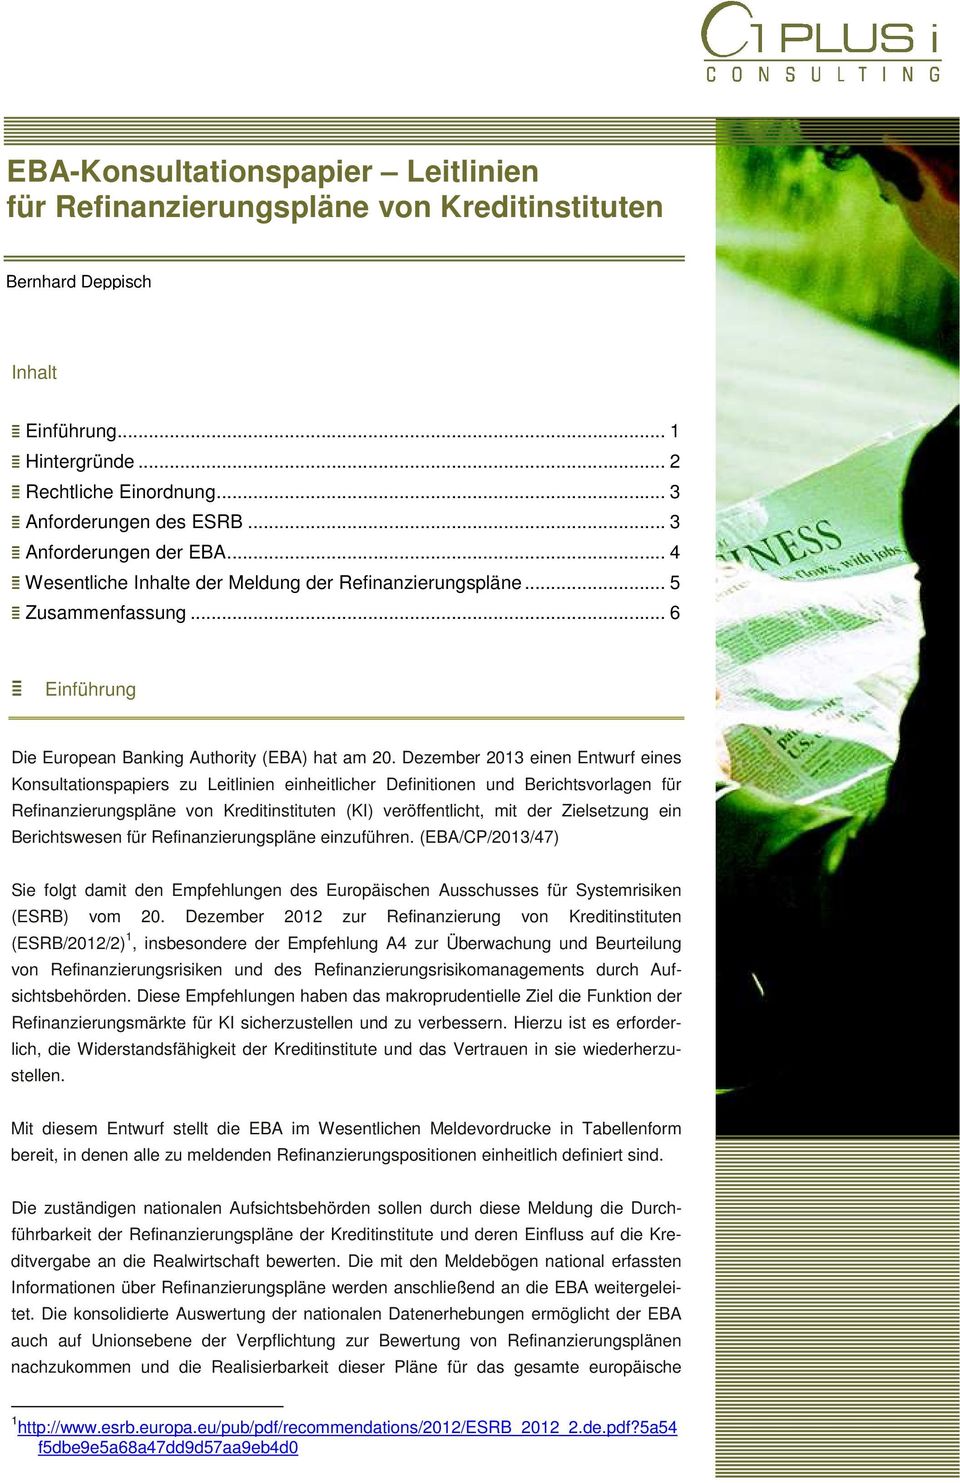 Dezember 2013 einen Entwurf eines Konsultationspapiers zu Leitlinien einheitlicher Definitionen und Berichtsvorlagen für Refinanzierungspläne von Kreditinstituten (KI) veröffentlicht, mit der